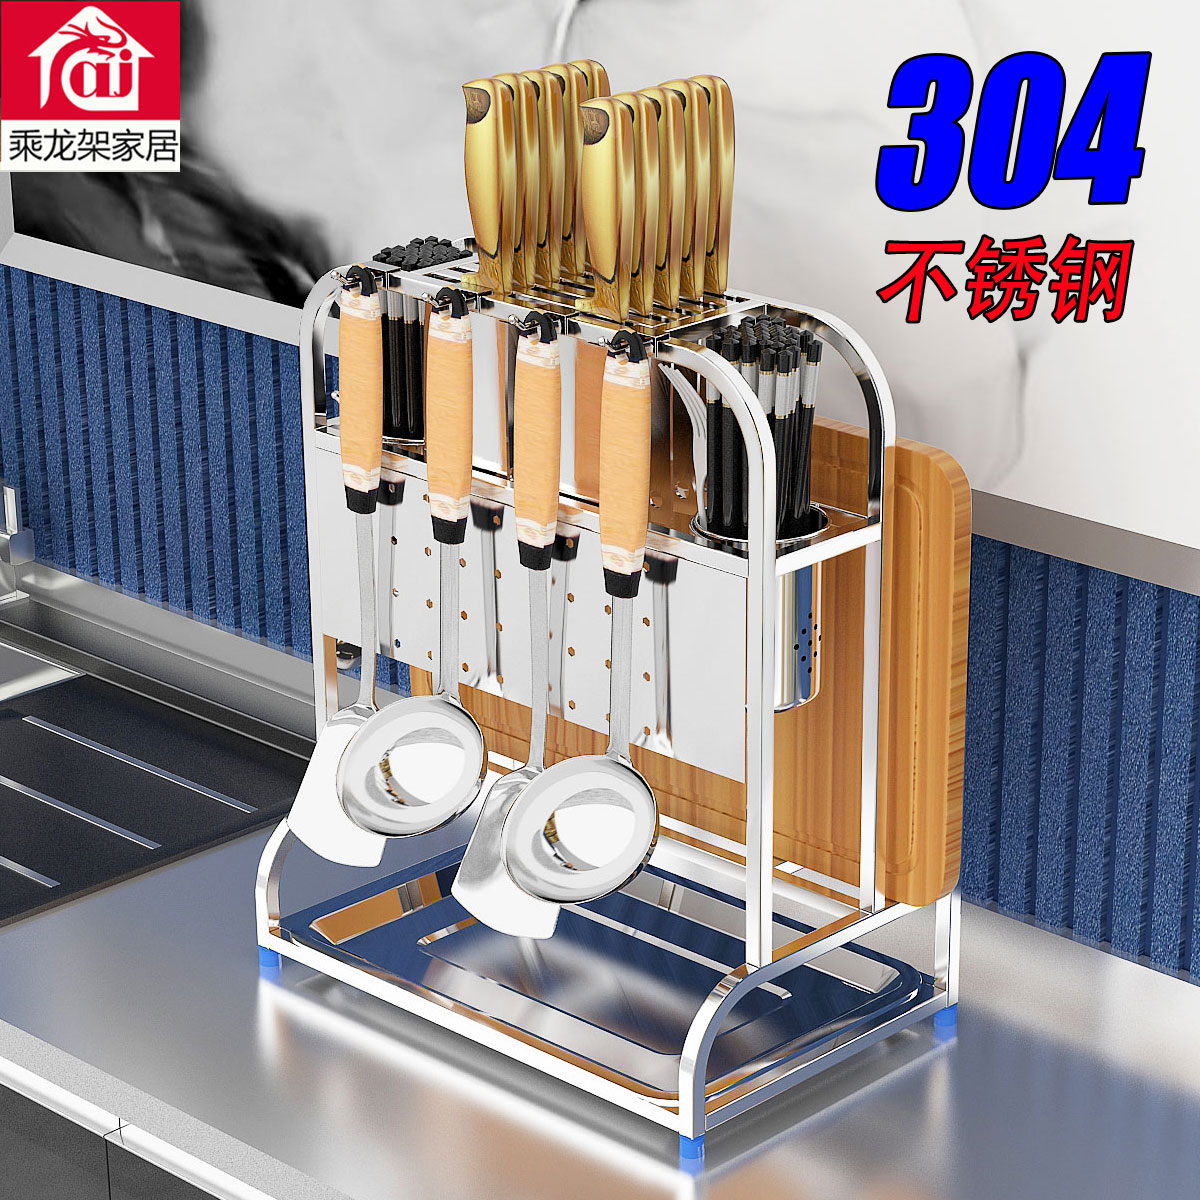 304不锈钢多功能刀架砧板架 厨房置物架厨具用品整理收纳架锅盖架